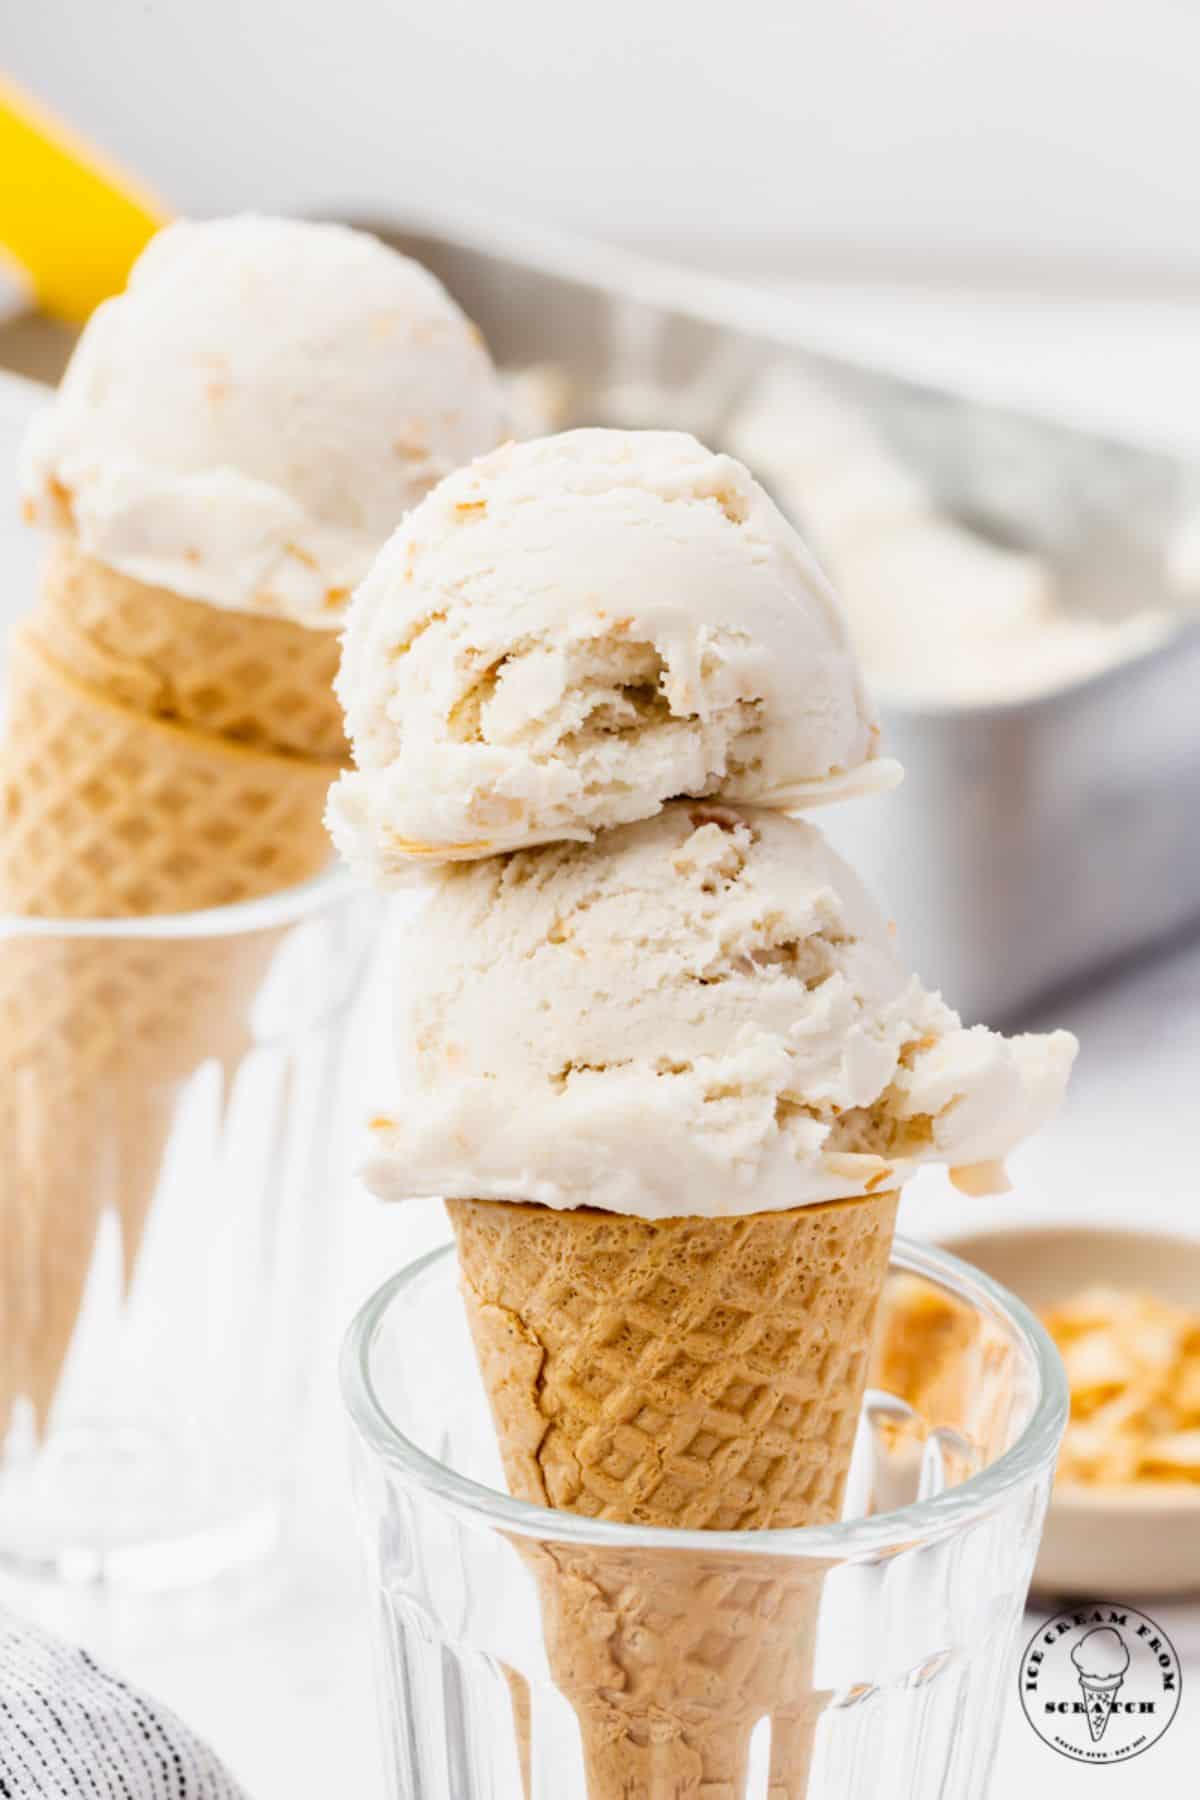 Coconut Ice Cream in a cone.